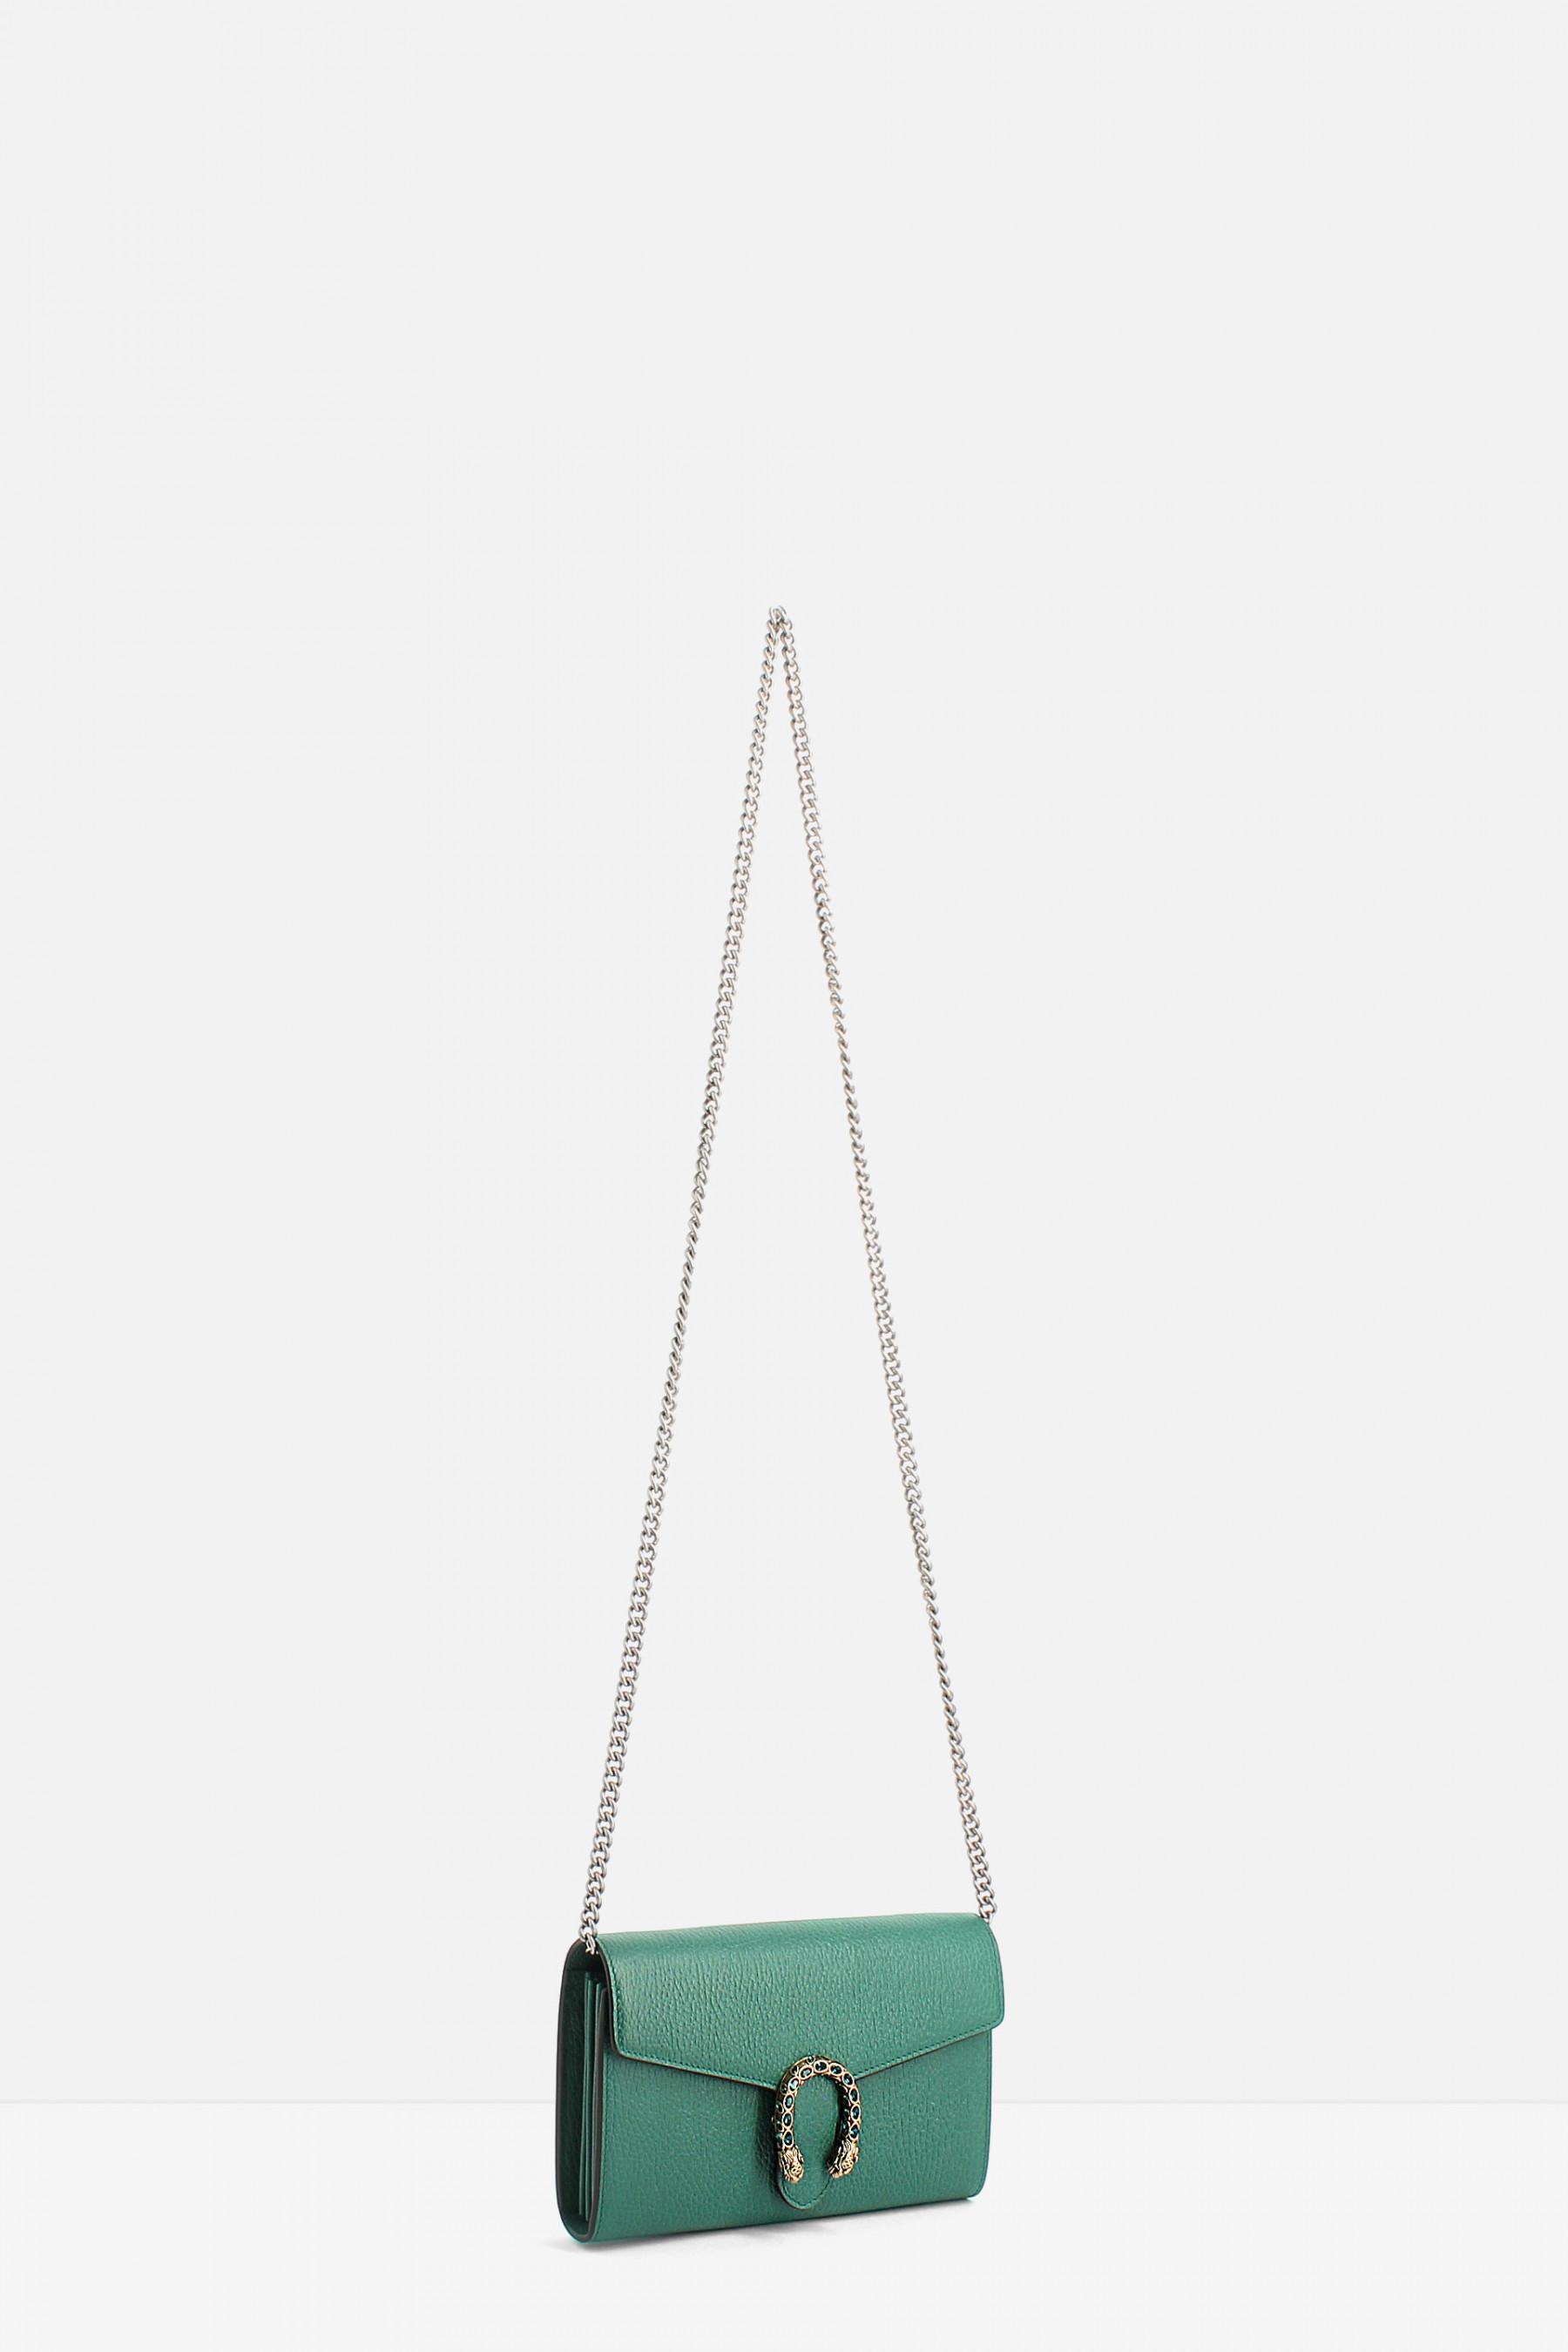 gucci dionysus green shoulder bag